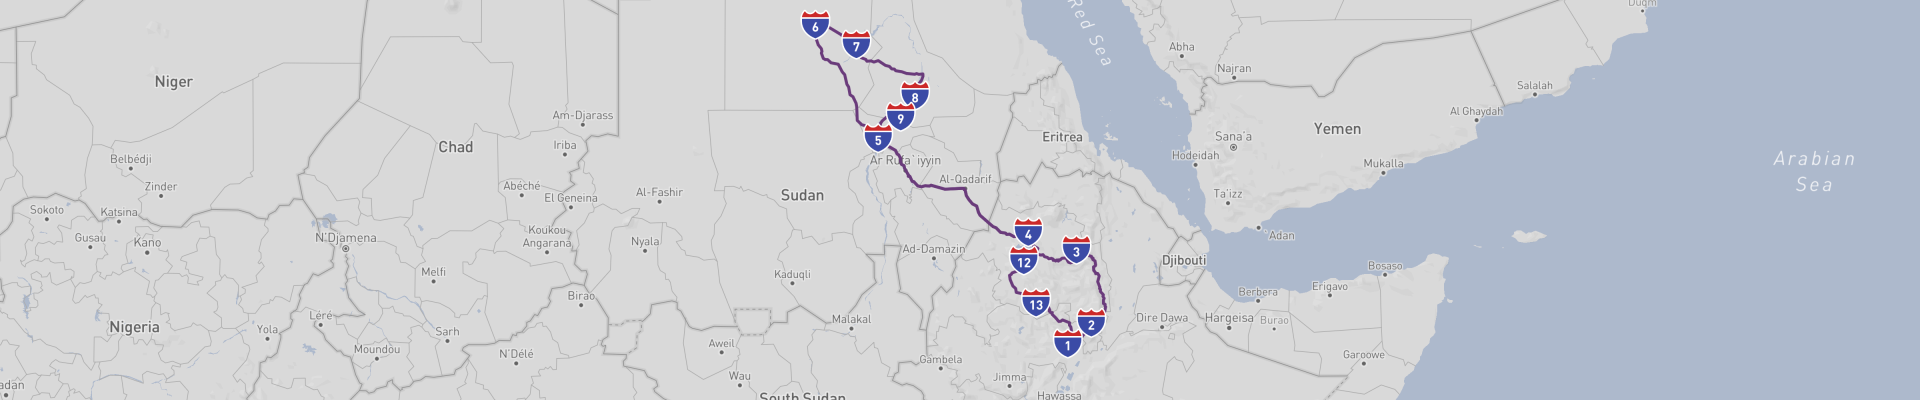 Podróż po Etiopii i Sudanie